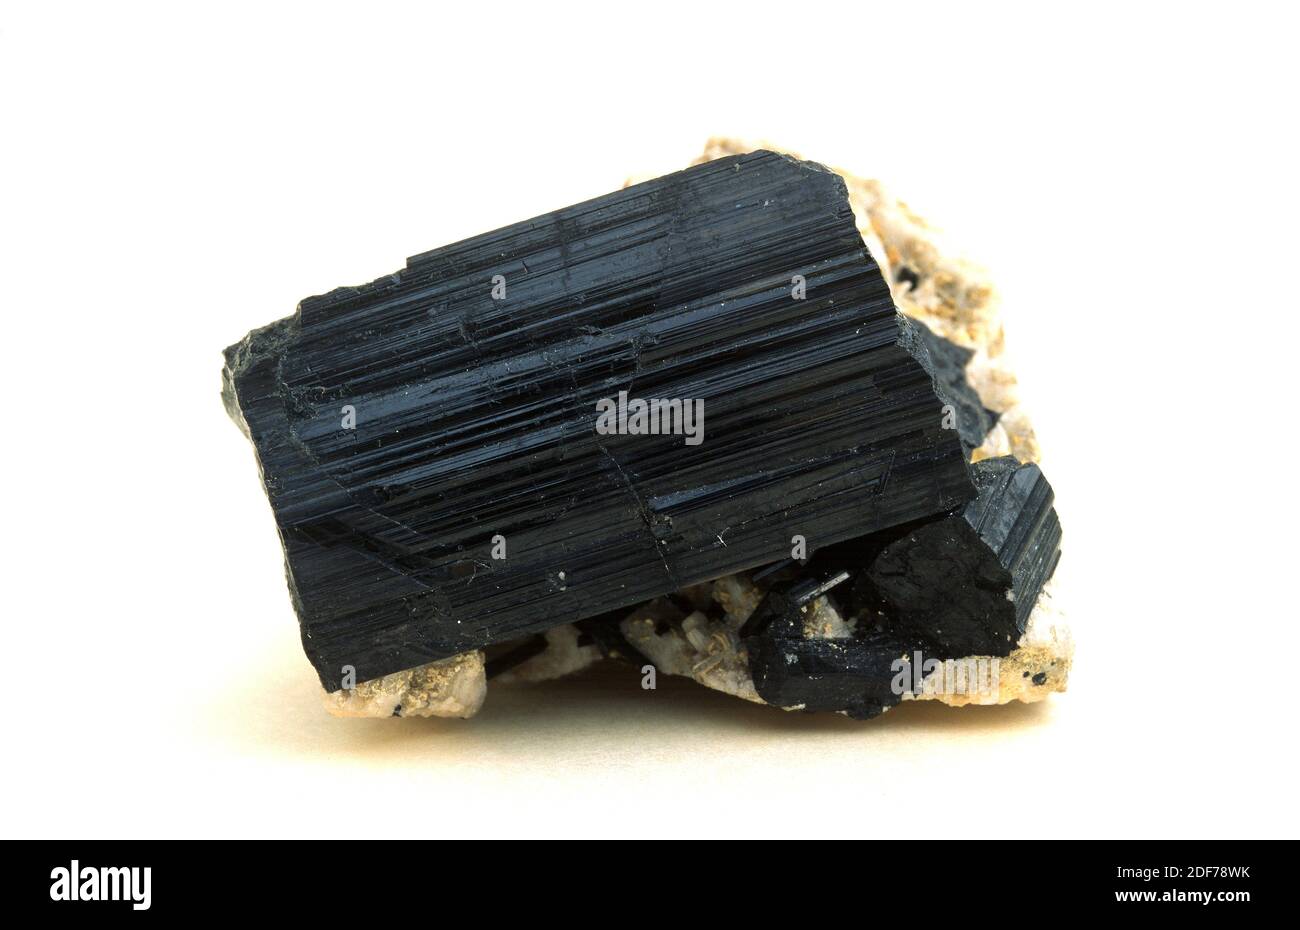 La tourmaline est un minéral au silicate de bore. Cristaux prismatiques noirs sur la matrice. Banque D'Images